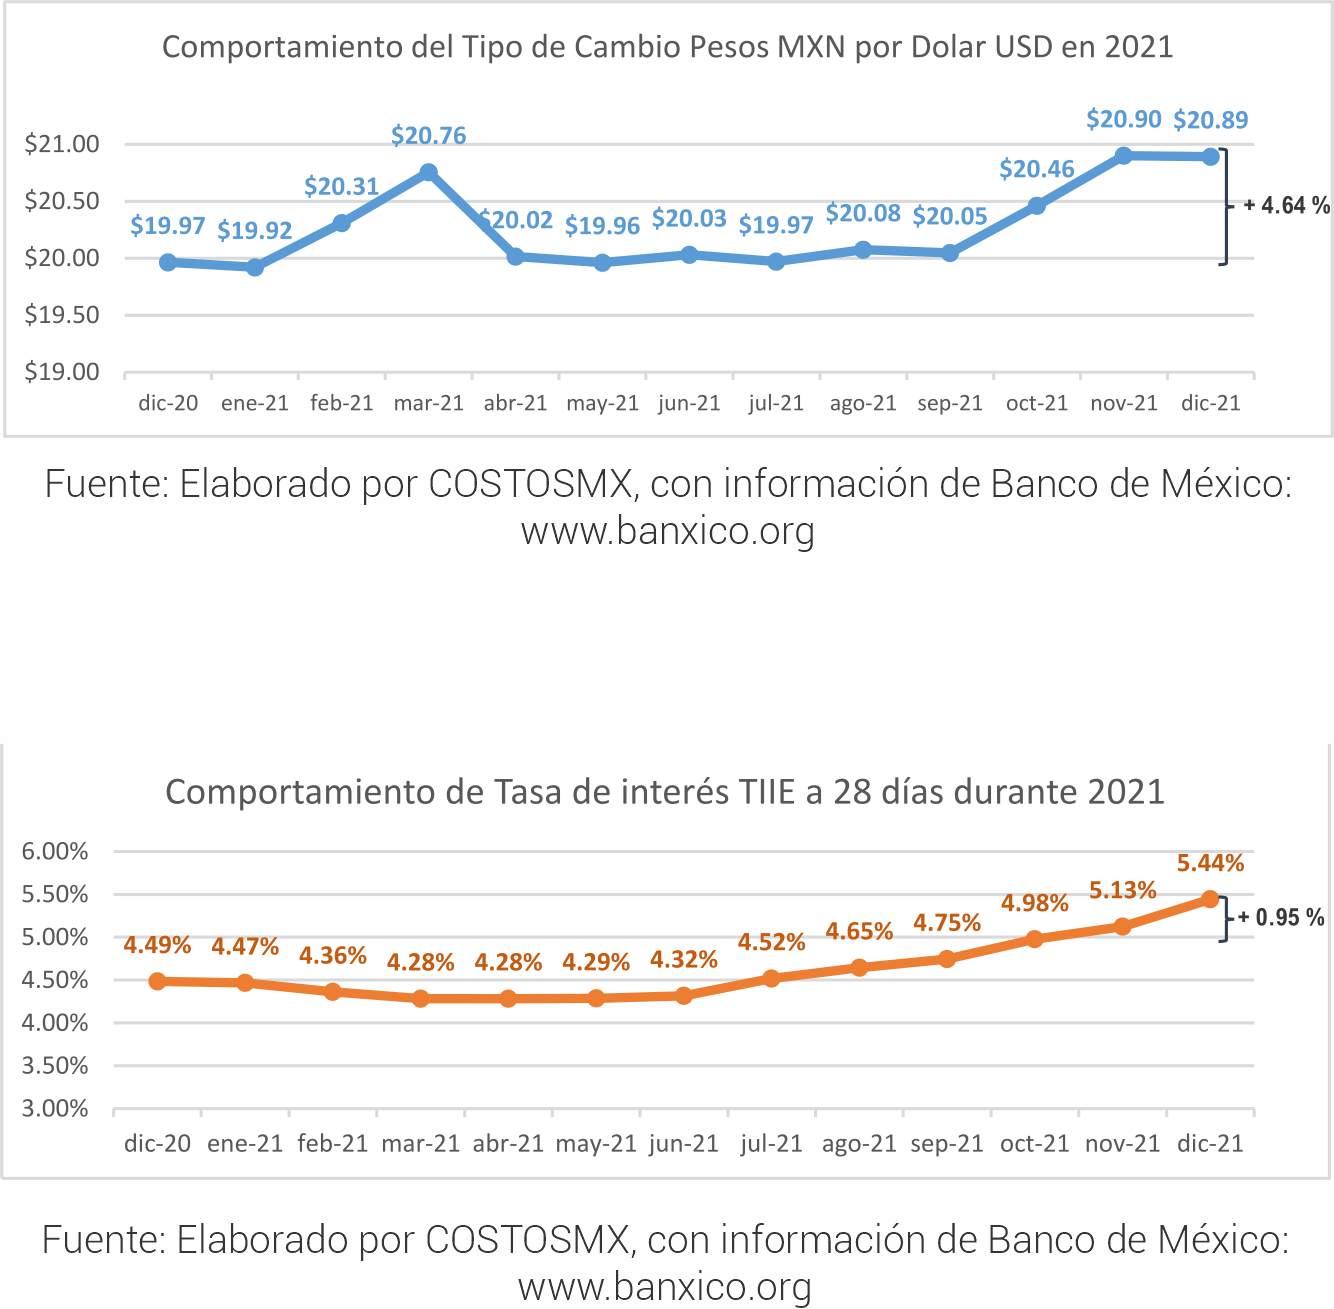 inflacion-en-la-industria-de-la-construccion-durante-2021-en-mexico